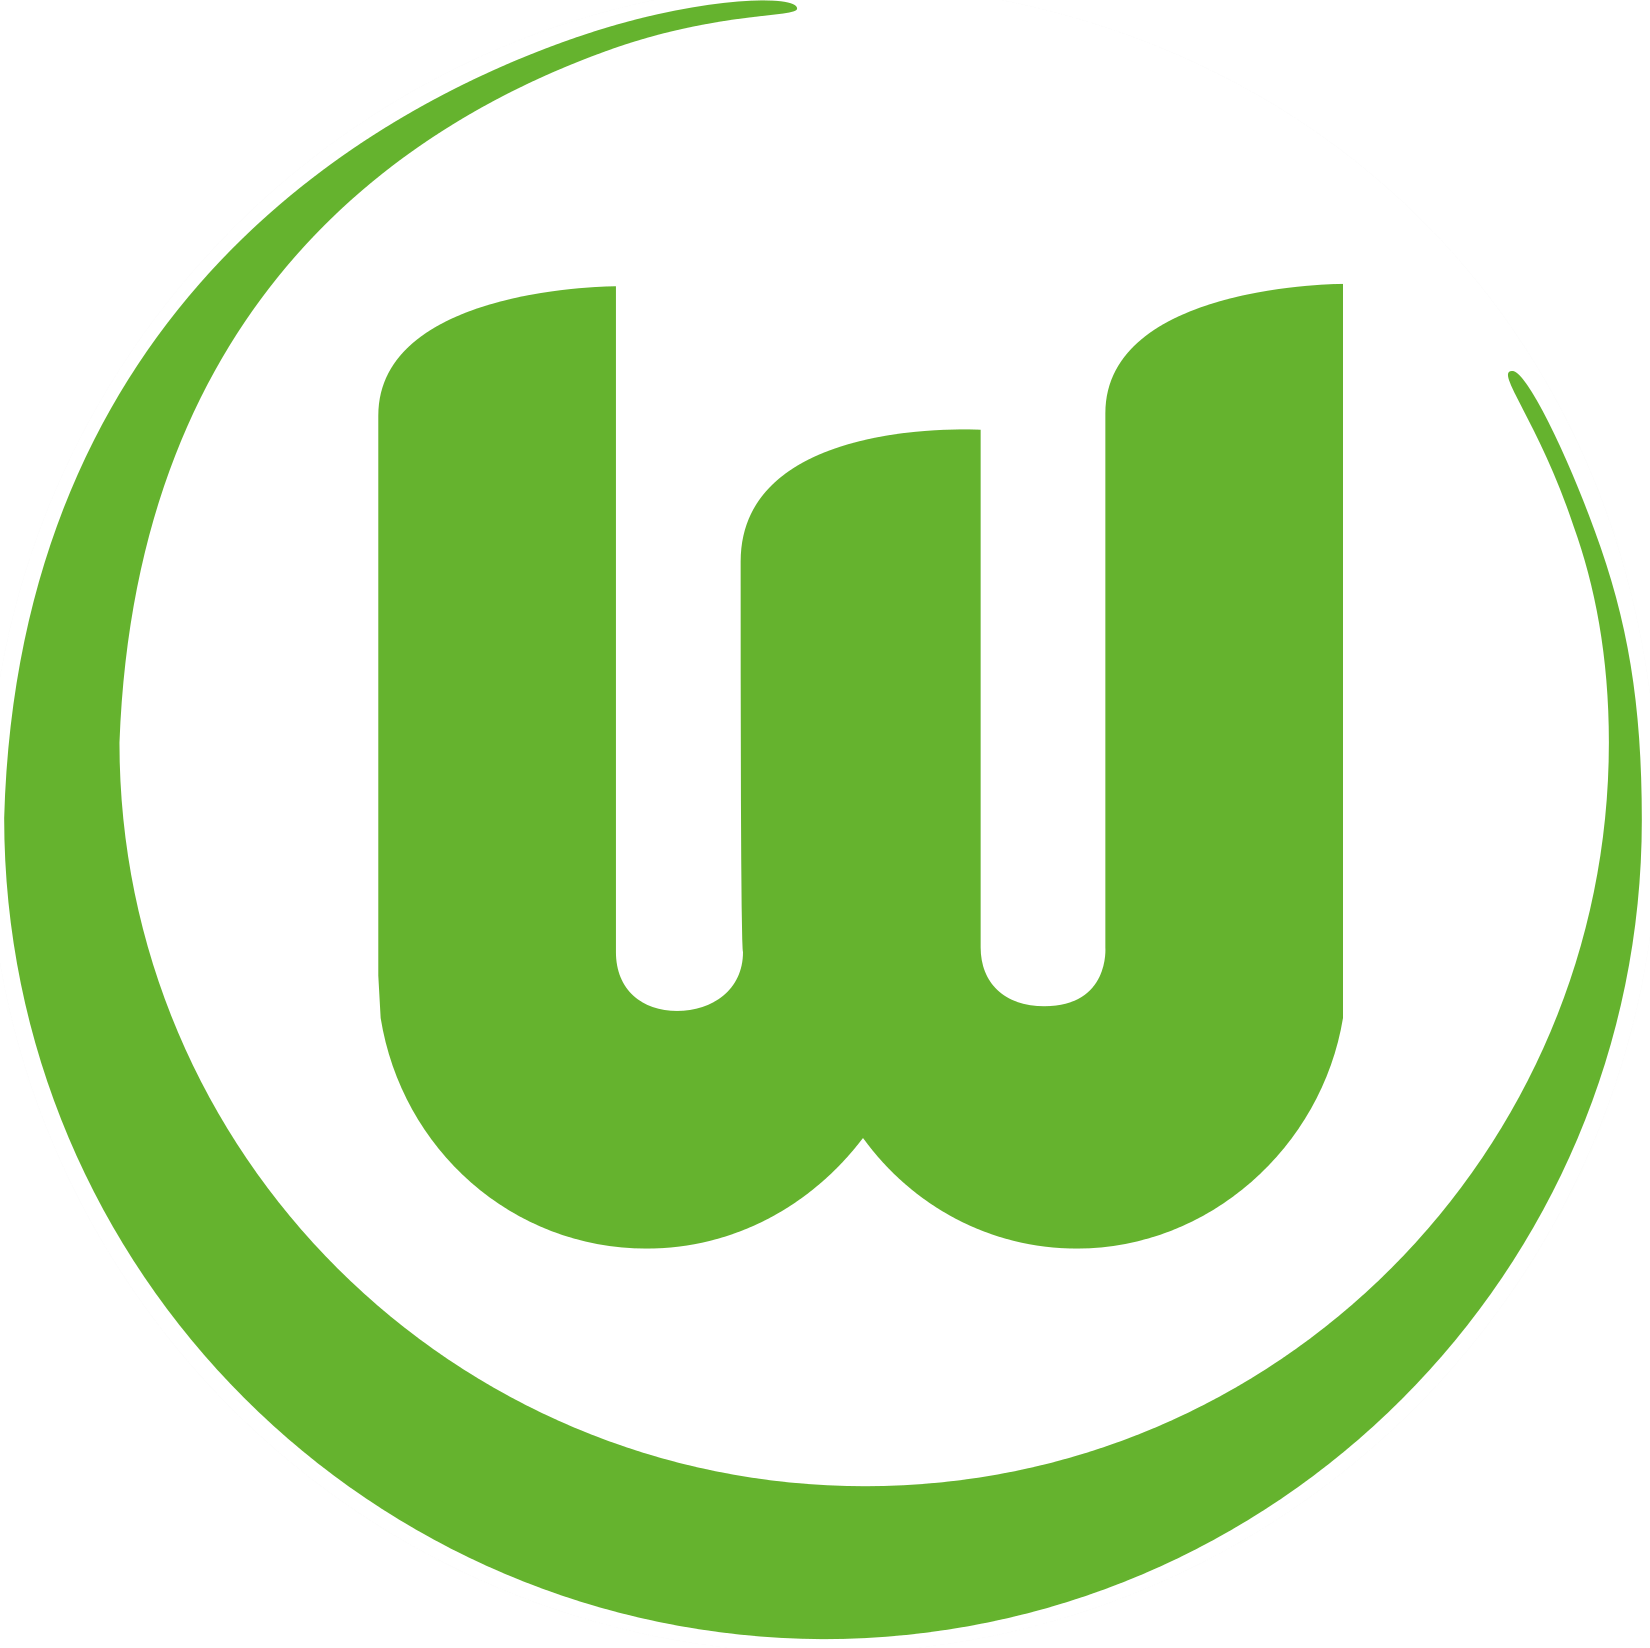 Wappen VfL Wolfsburg 1945 diverse  50046